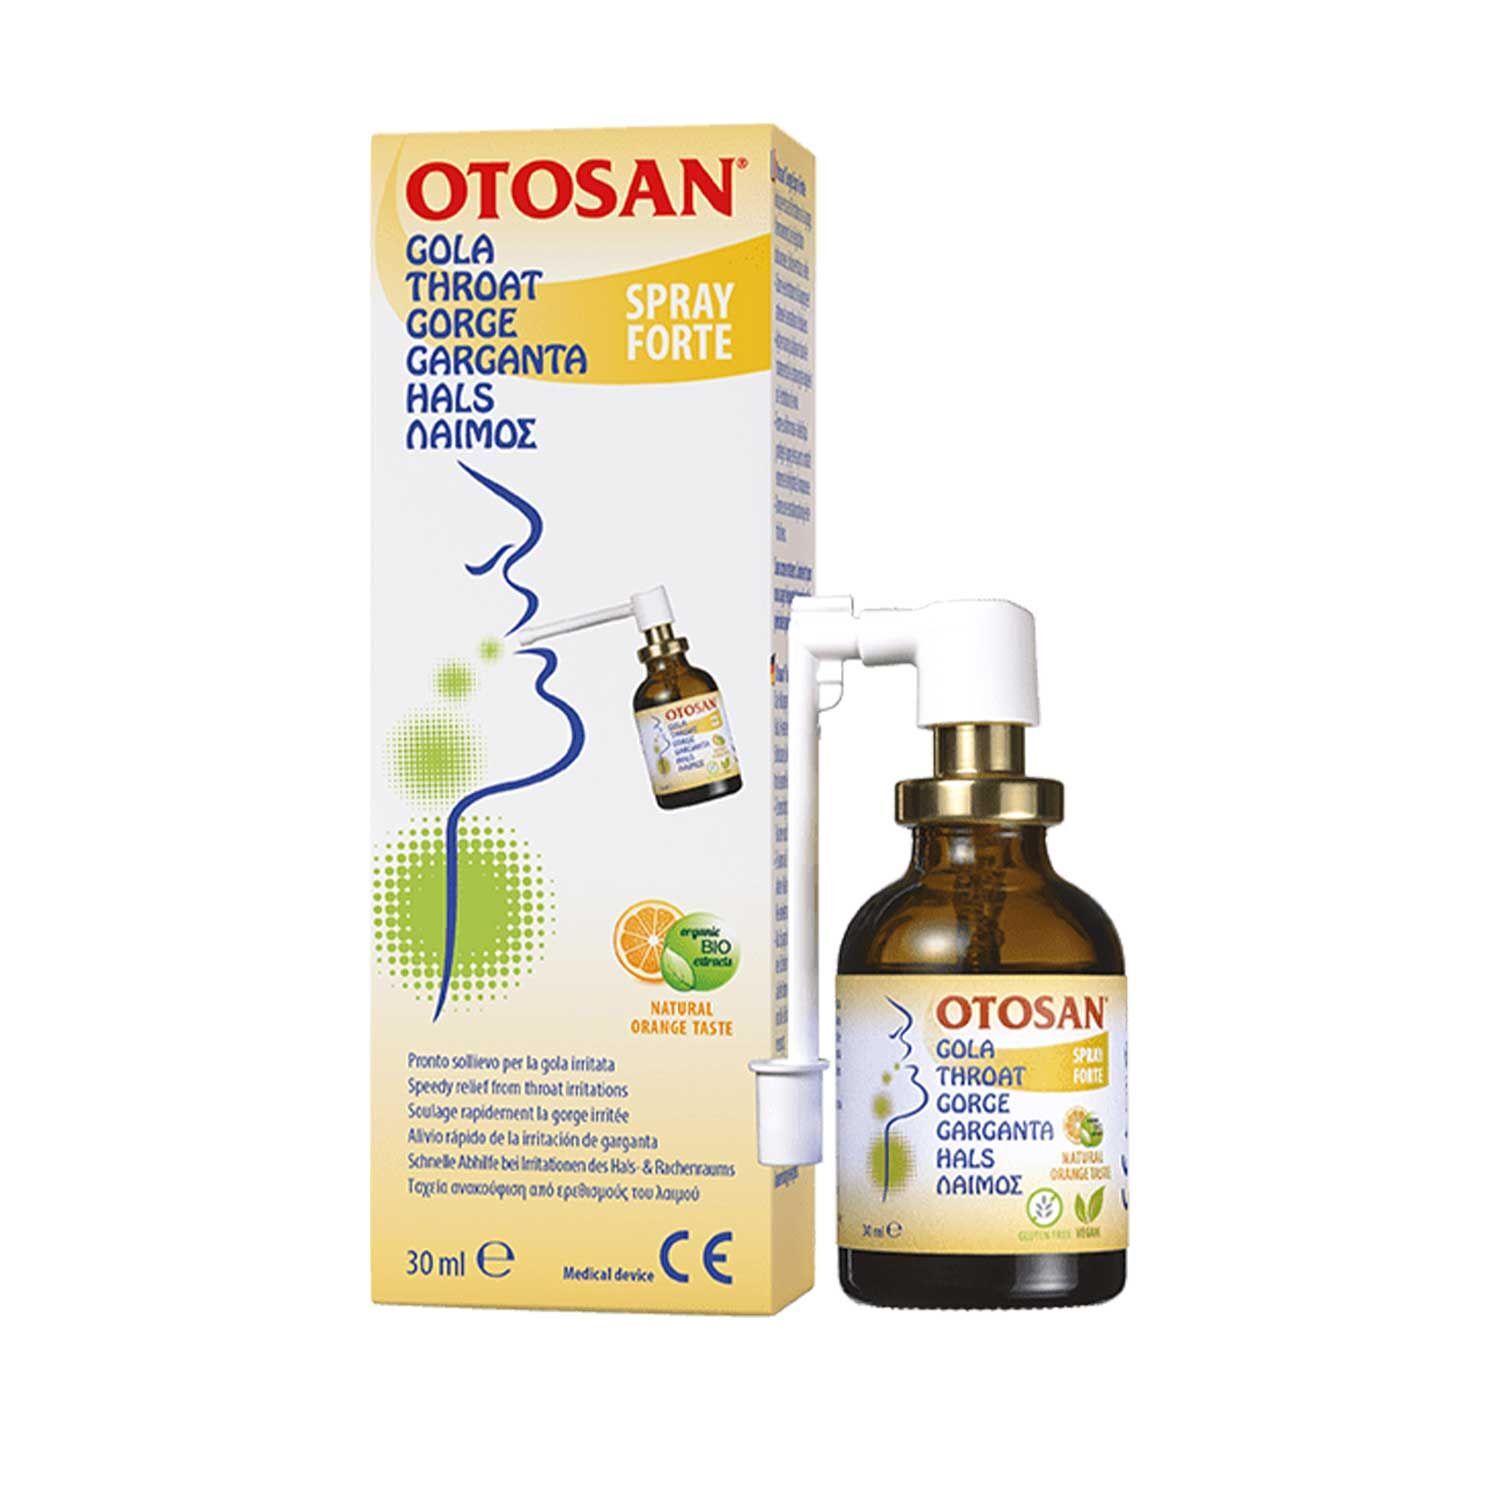 Otosan Gola Spray Forte 30ml